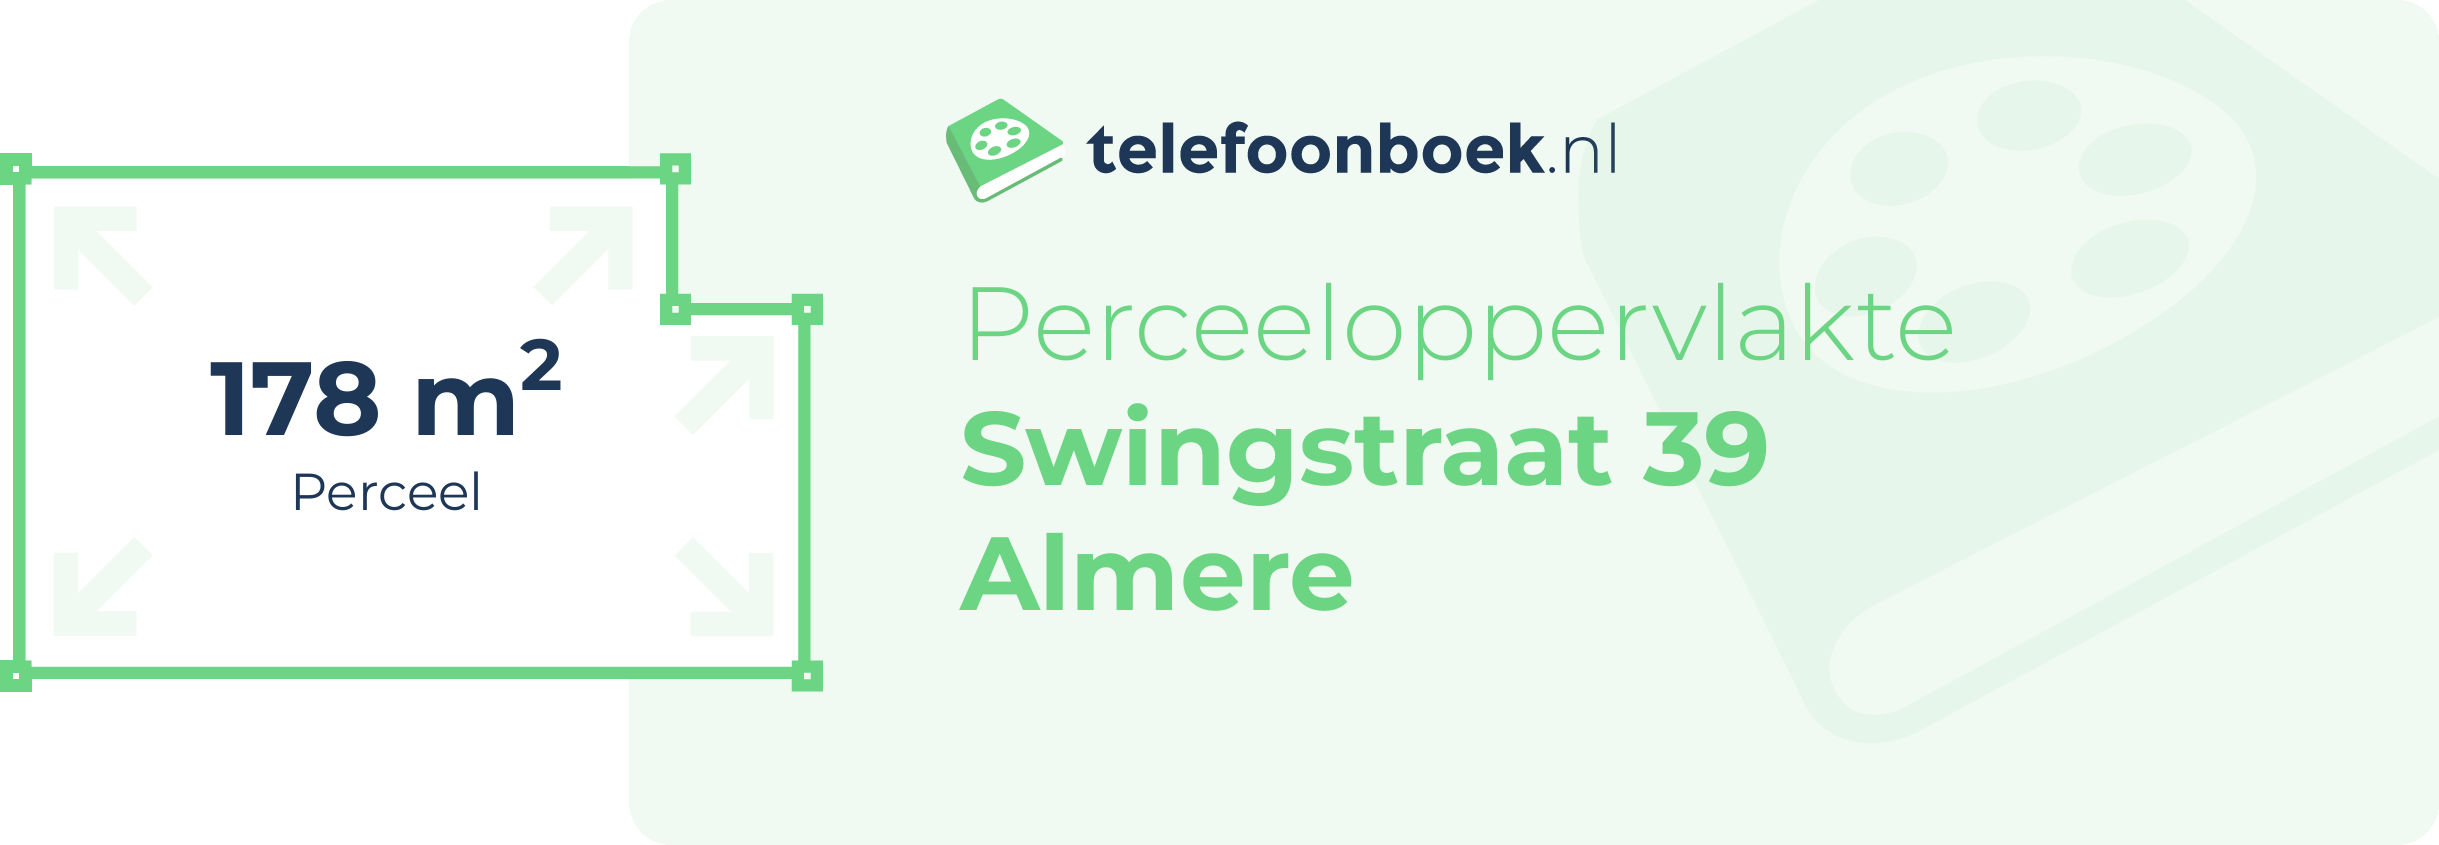 Perceeloppervlakte Swingstraat 39 Almere